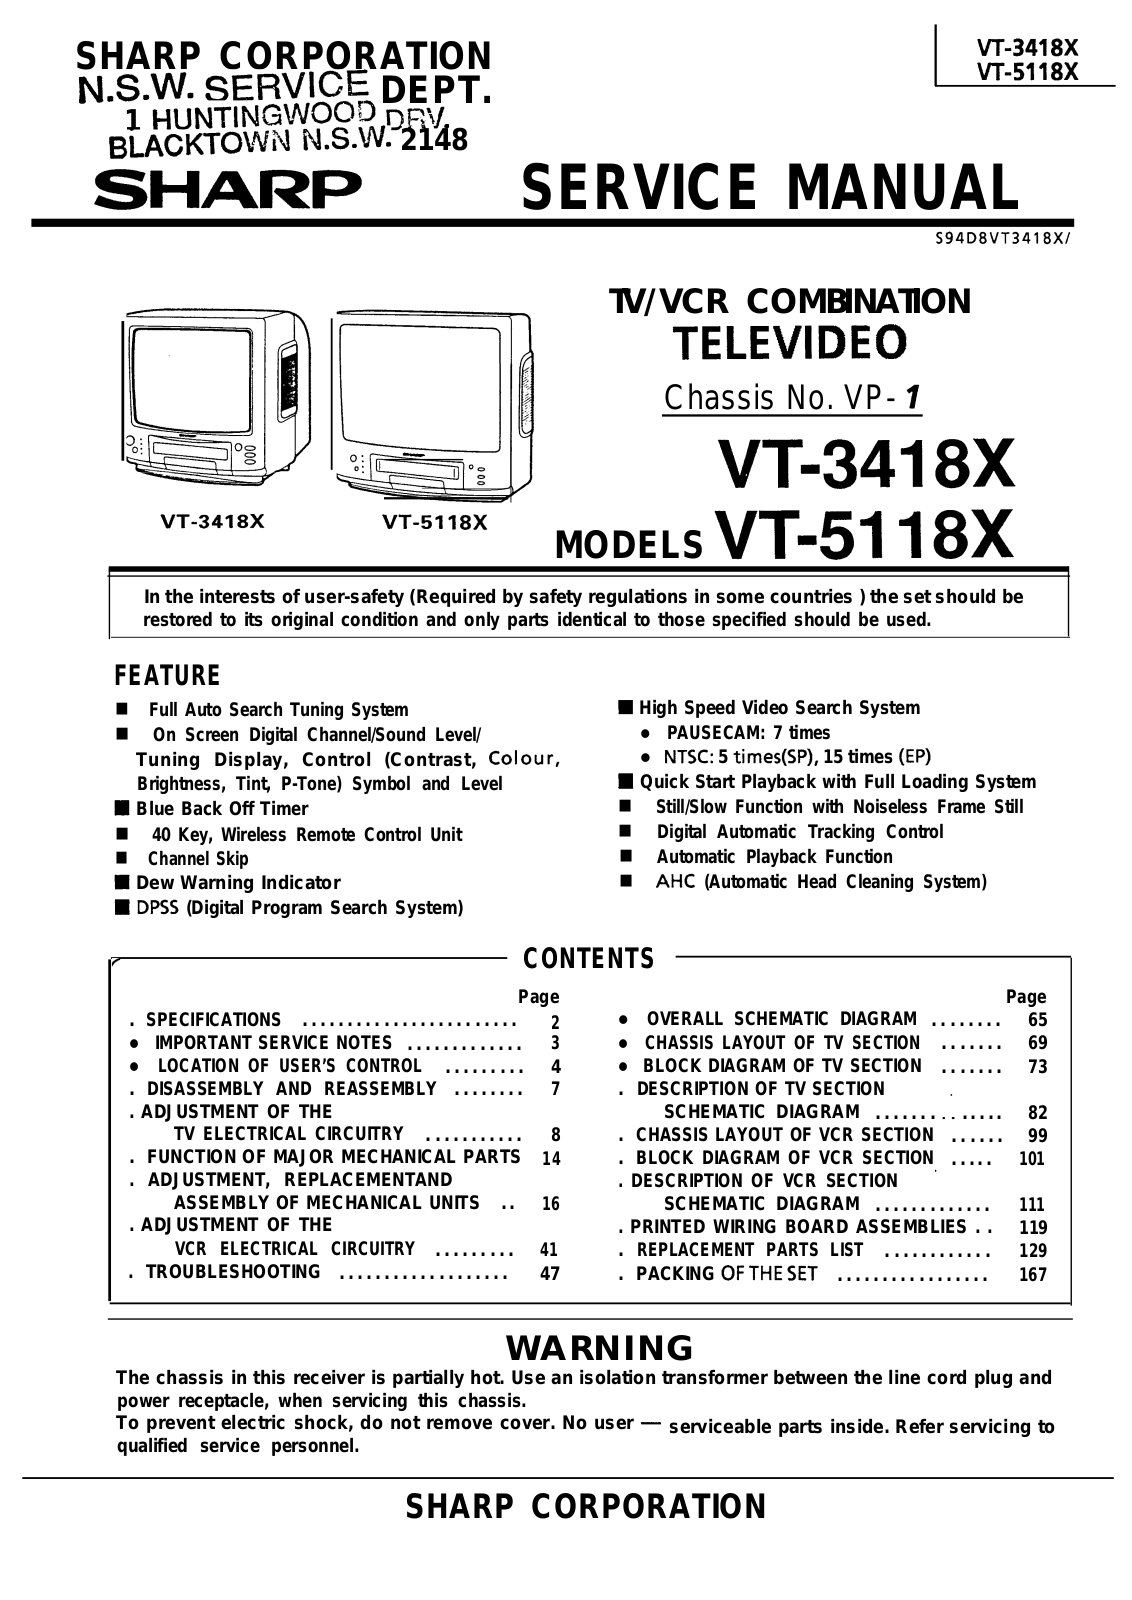 SHARP VT-3418X, VT-5118X Service Manual